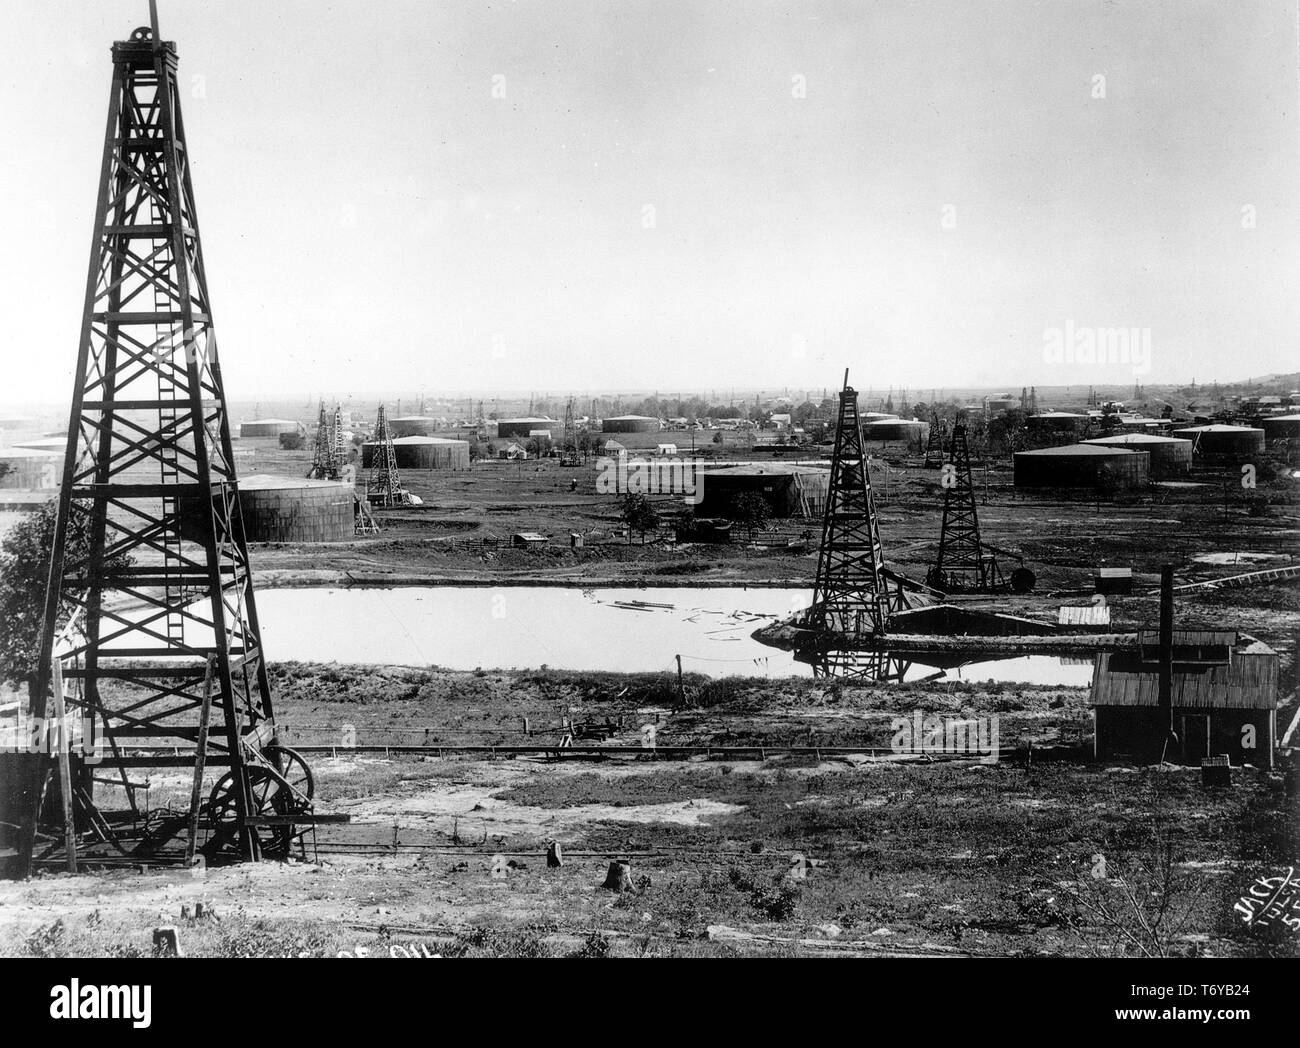 Birds Eye View der Kräne, Tanks, ein Irdenes storage Grube auf ein Ölfeld, Oklahoma, 1900. Mit freundlicher Genehmigung des US-Ministeriums für Energie. () Stockfoto